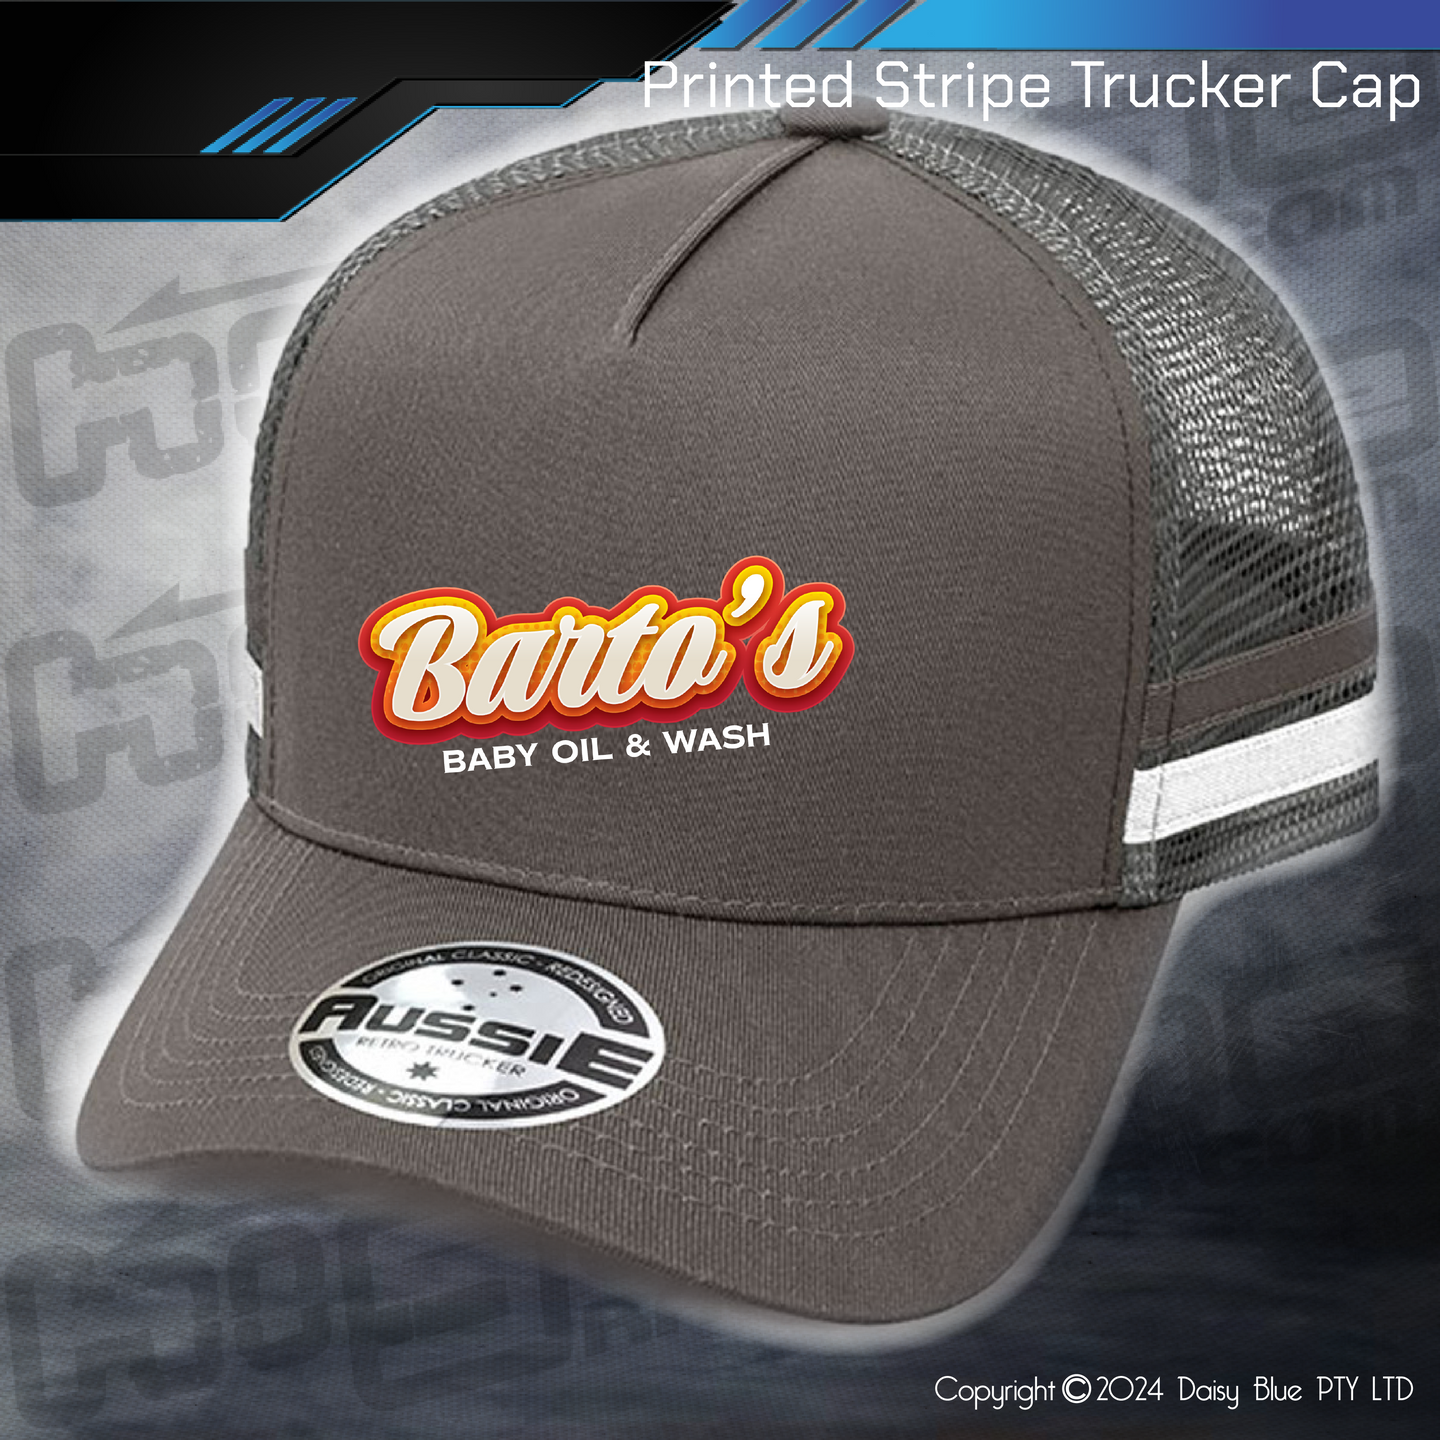 STRIPE Trucker Cap - Barto